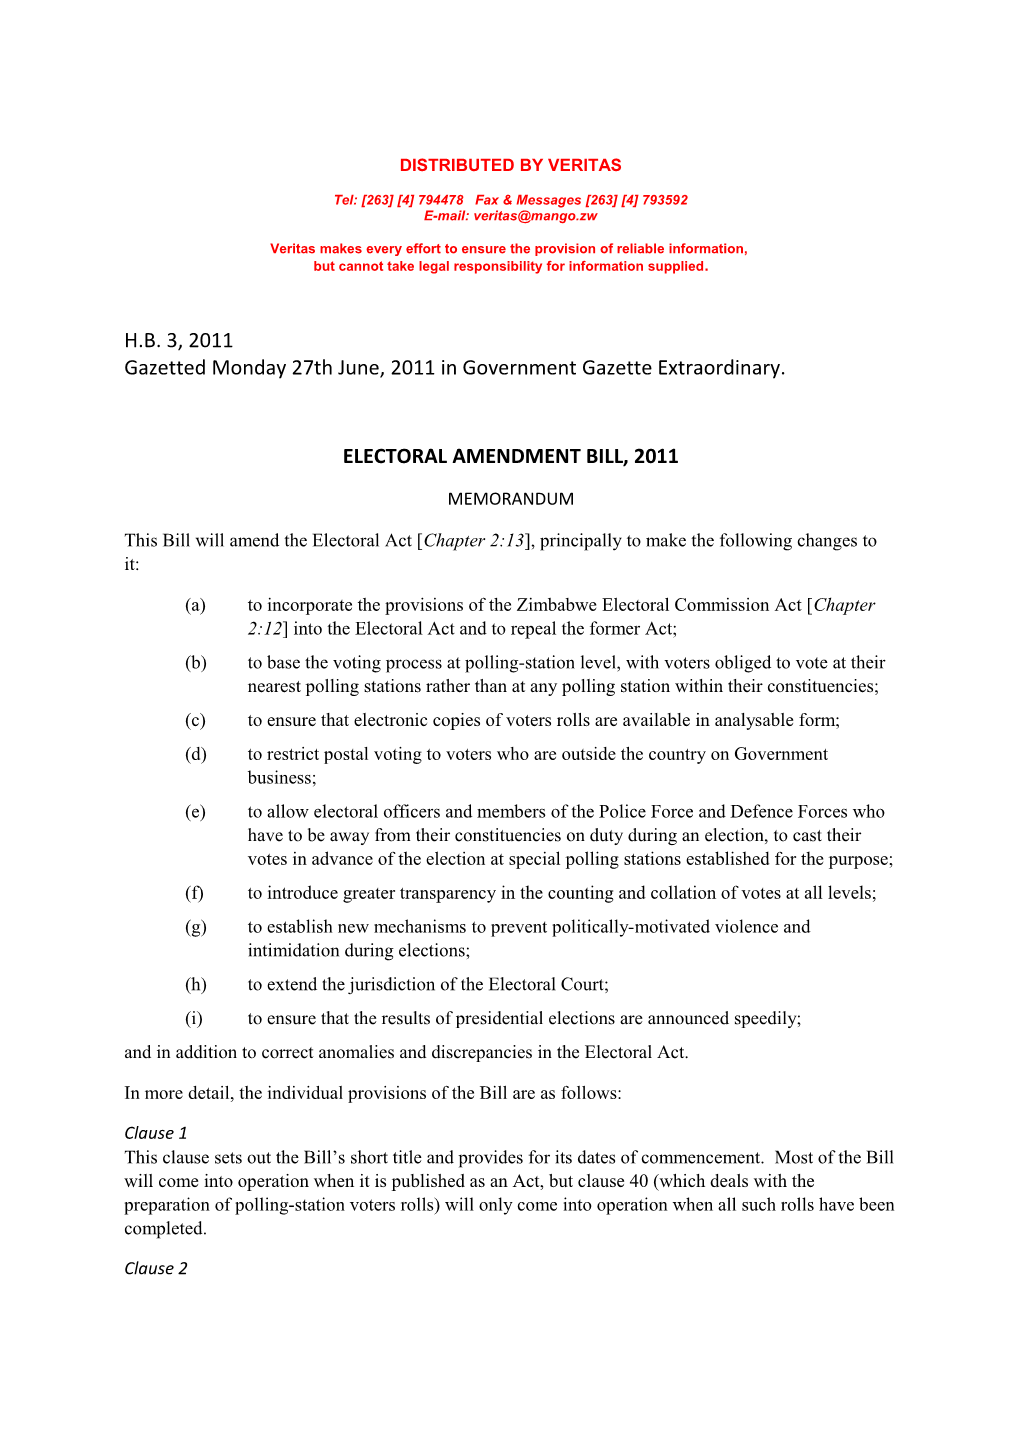 Electoral Amendmentr Bill HB 3,2011